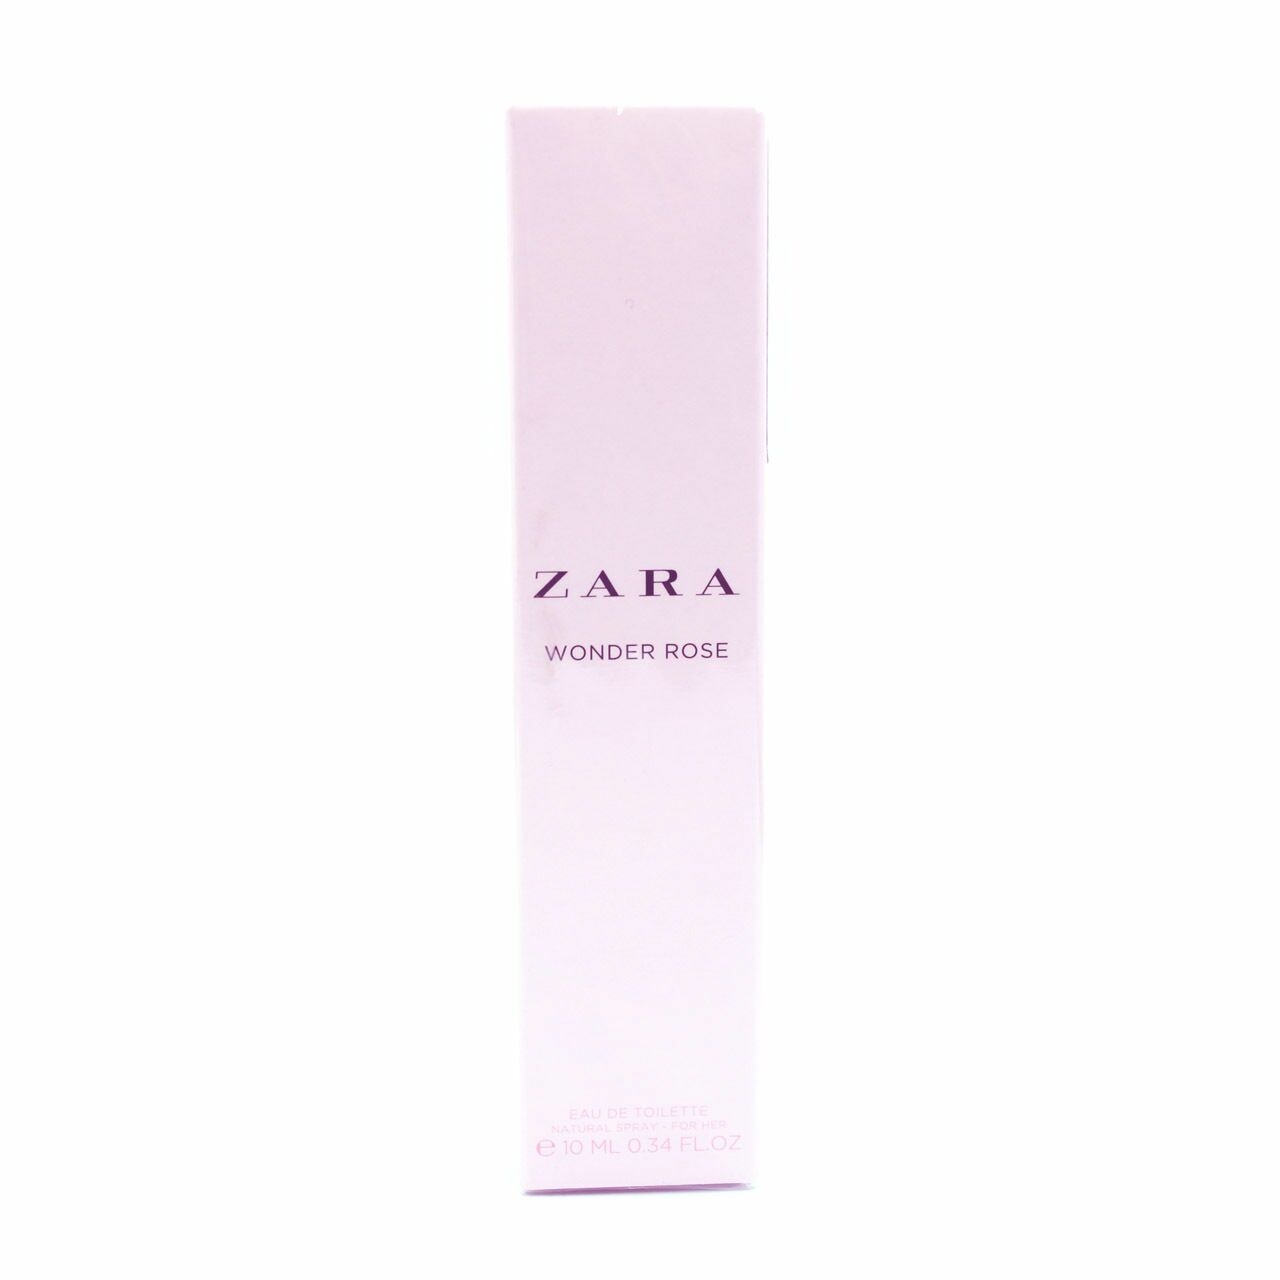 Zara Wonder Rose Eu De Toilette Fragrance